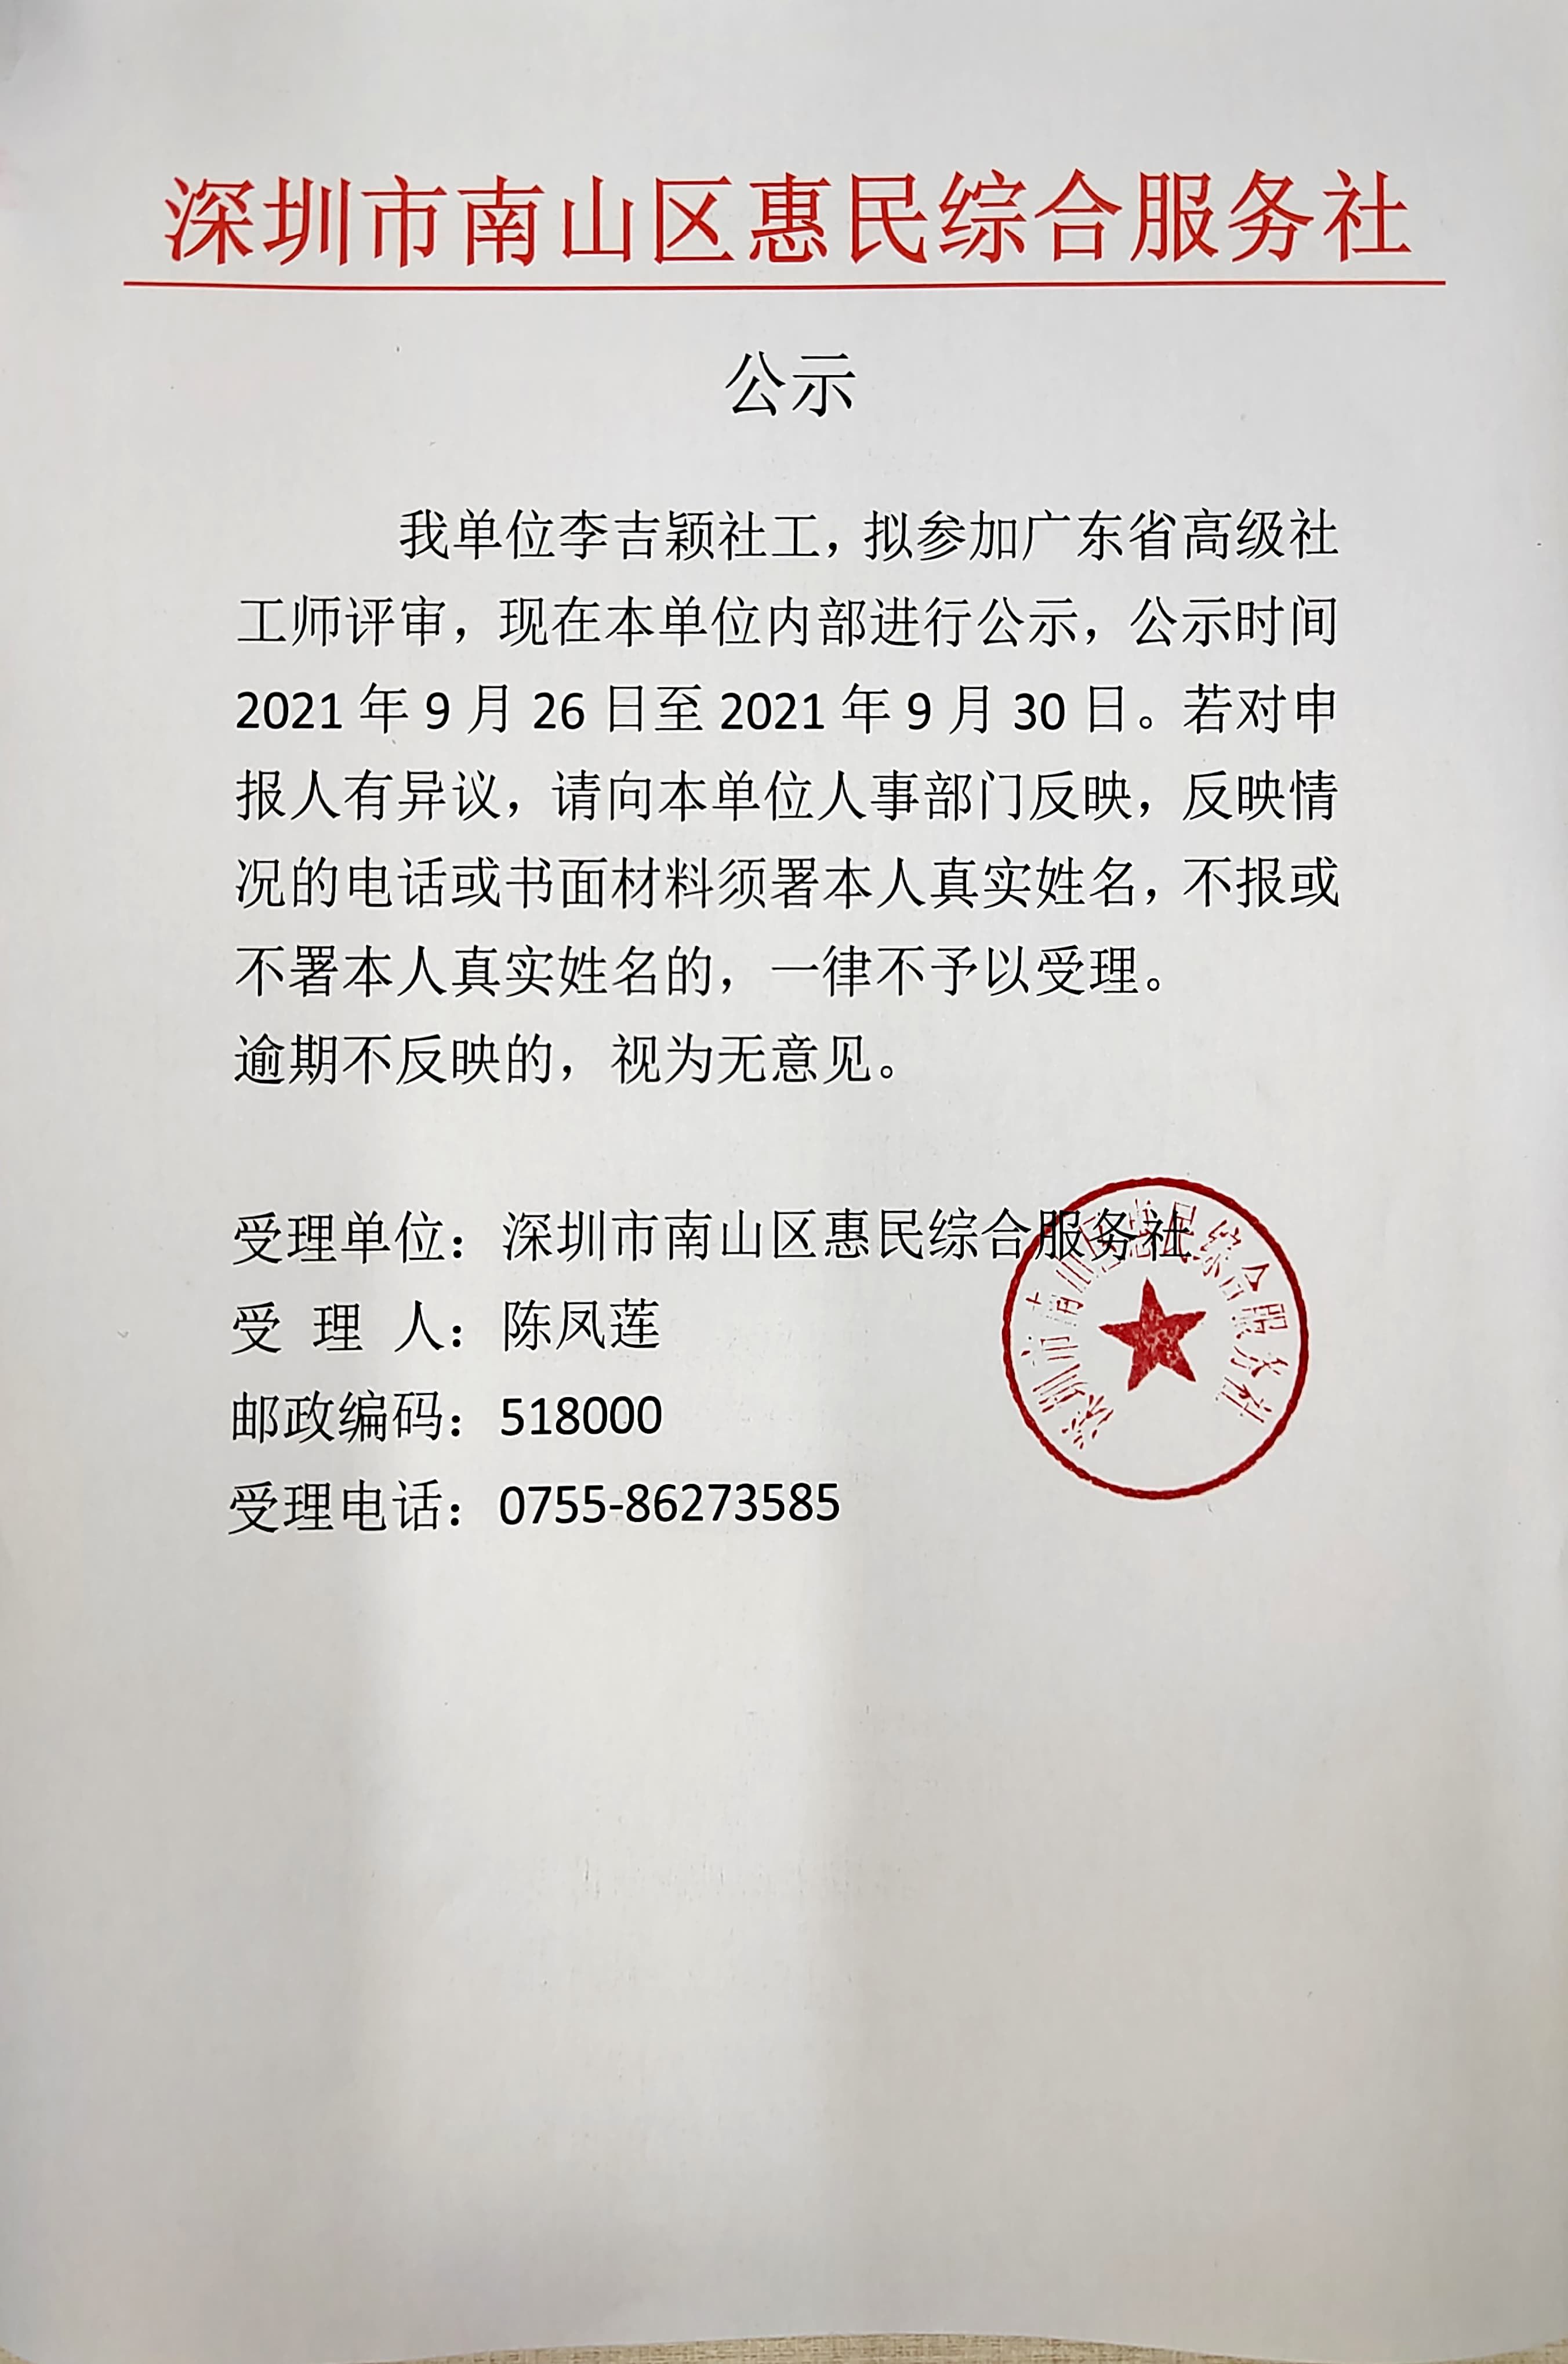 关于李吉颖同事参加广东省高级社工师评审的公示